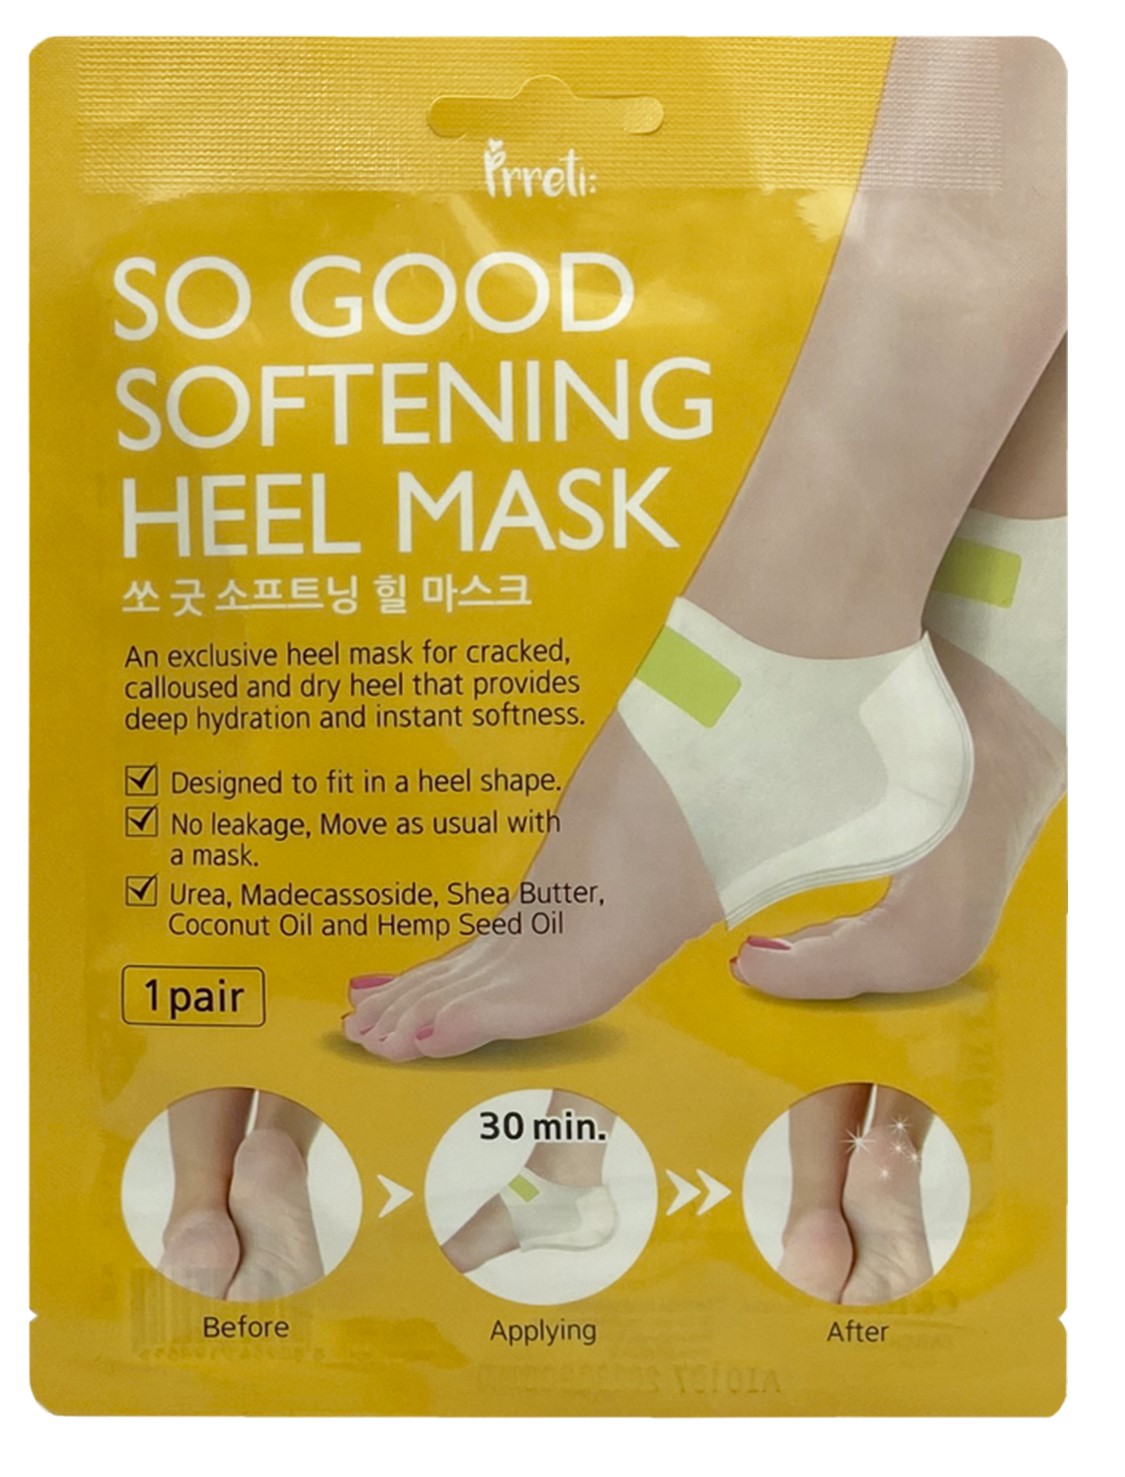 Прити Мгновенно смягчающая маска для пяток с маслом ши Heel Mask, 1 пара (Prreti, Носки и перчатки) фото 0